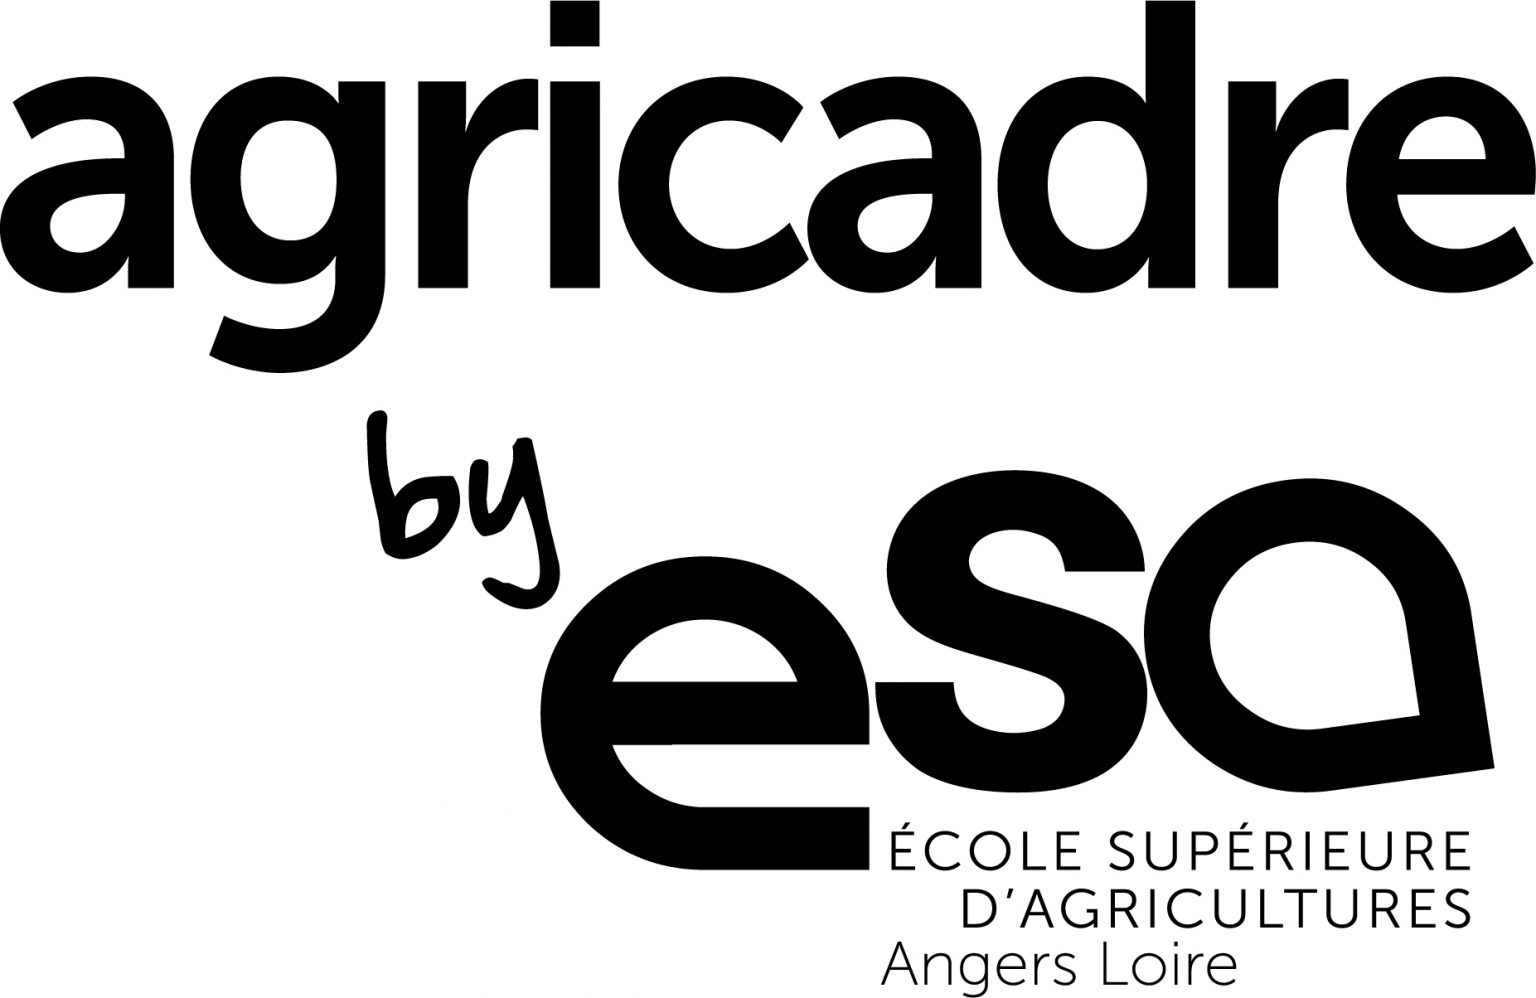 Agricadre ESA